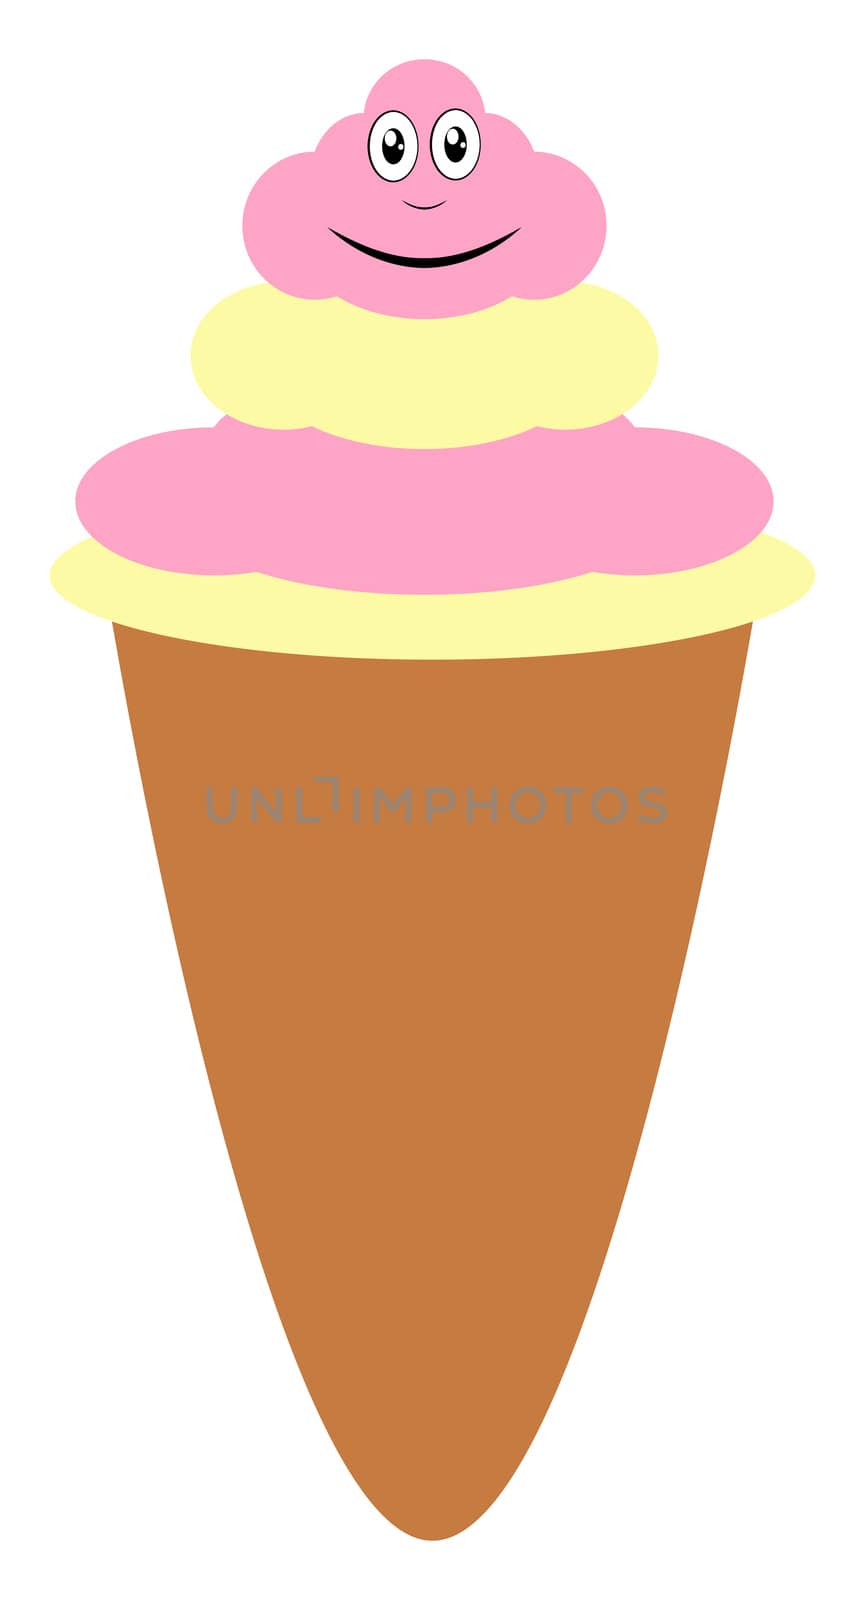 Ice cream in cornet, illustration, vector on white background by Morphart